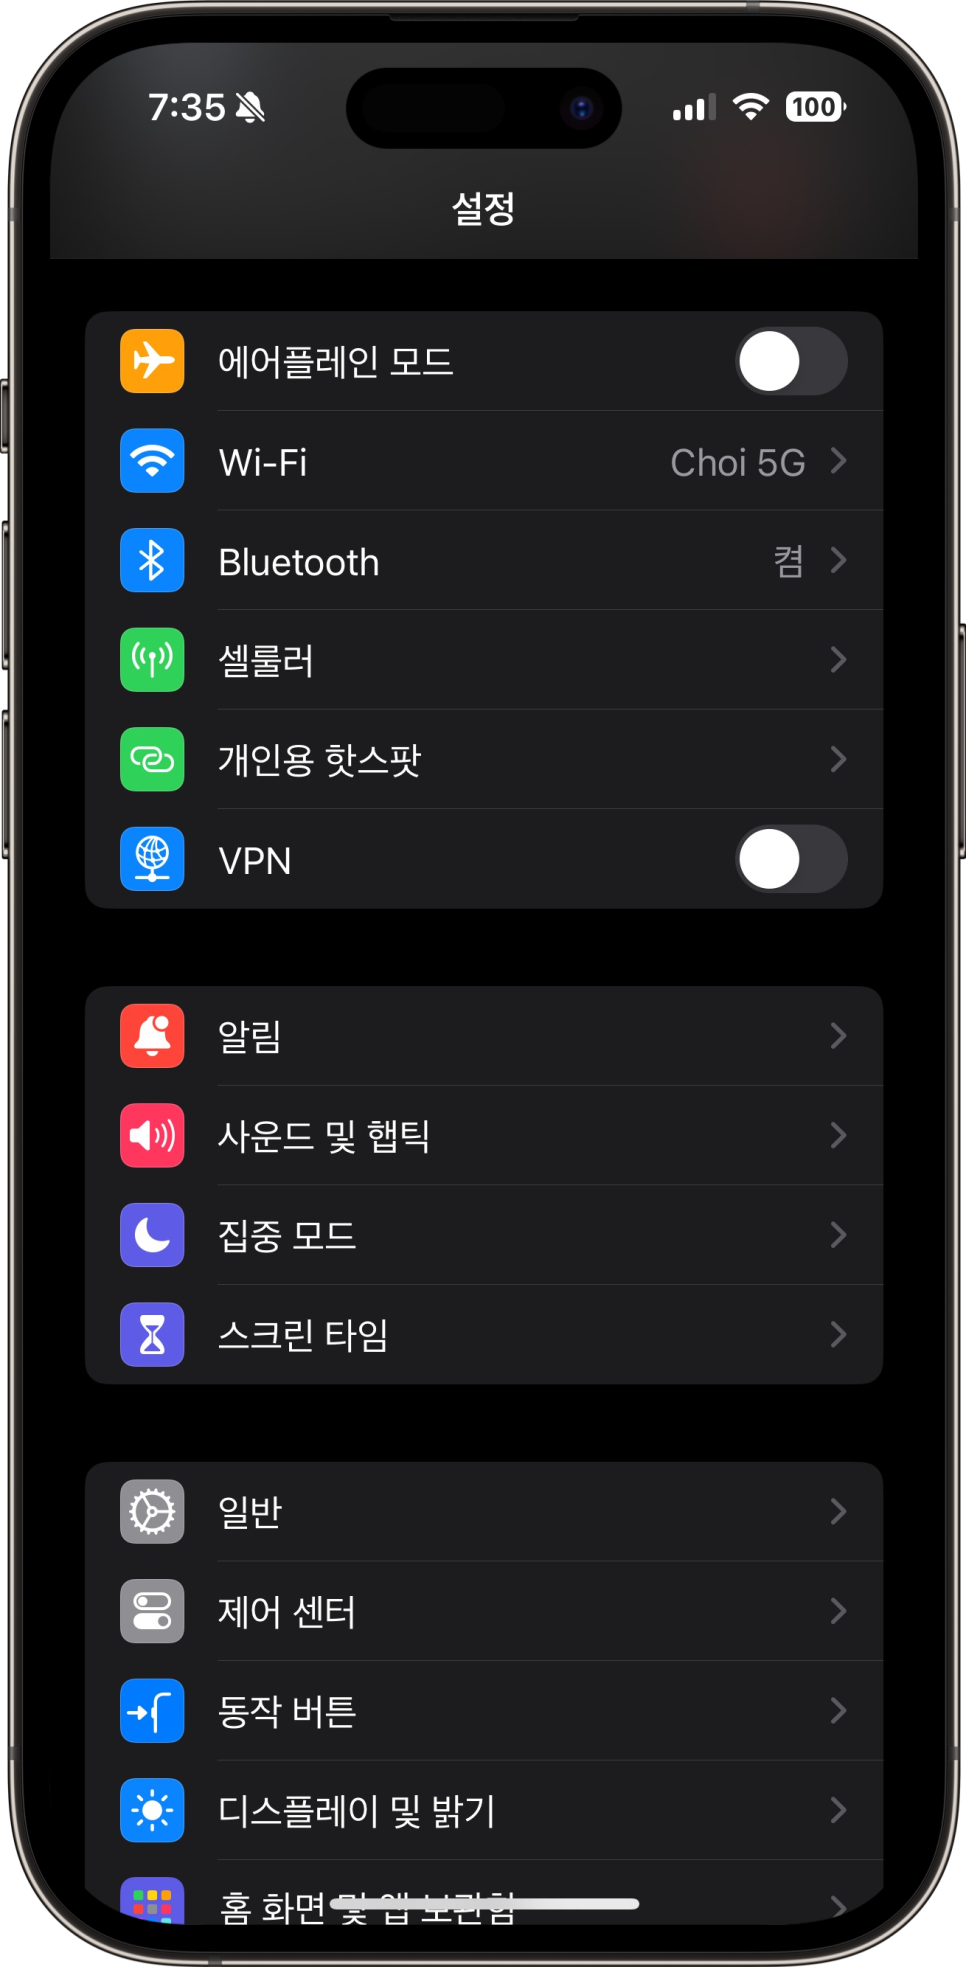 아이폰 ios17.2 소프트웨어 업데이트 일기 앱, 알림음 변경 등 변화